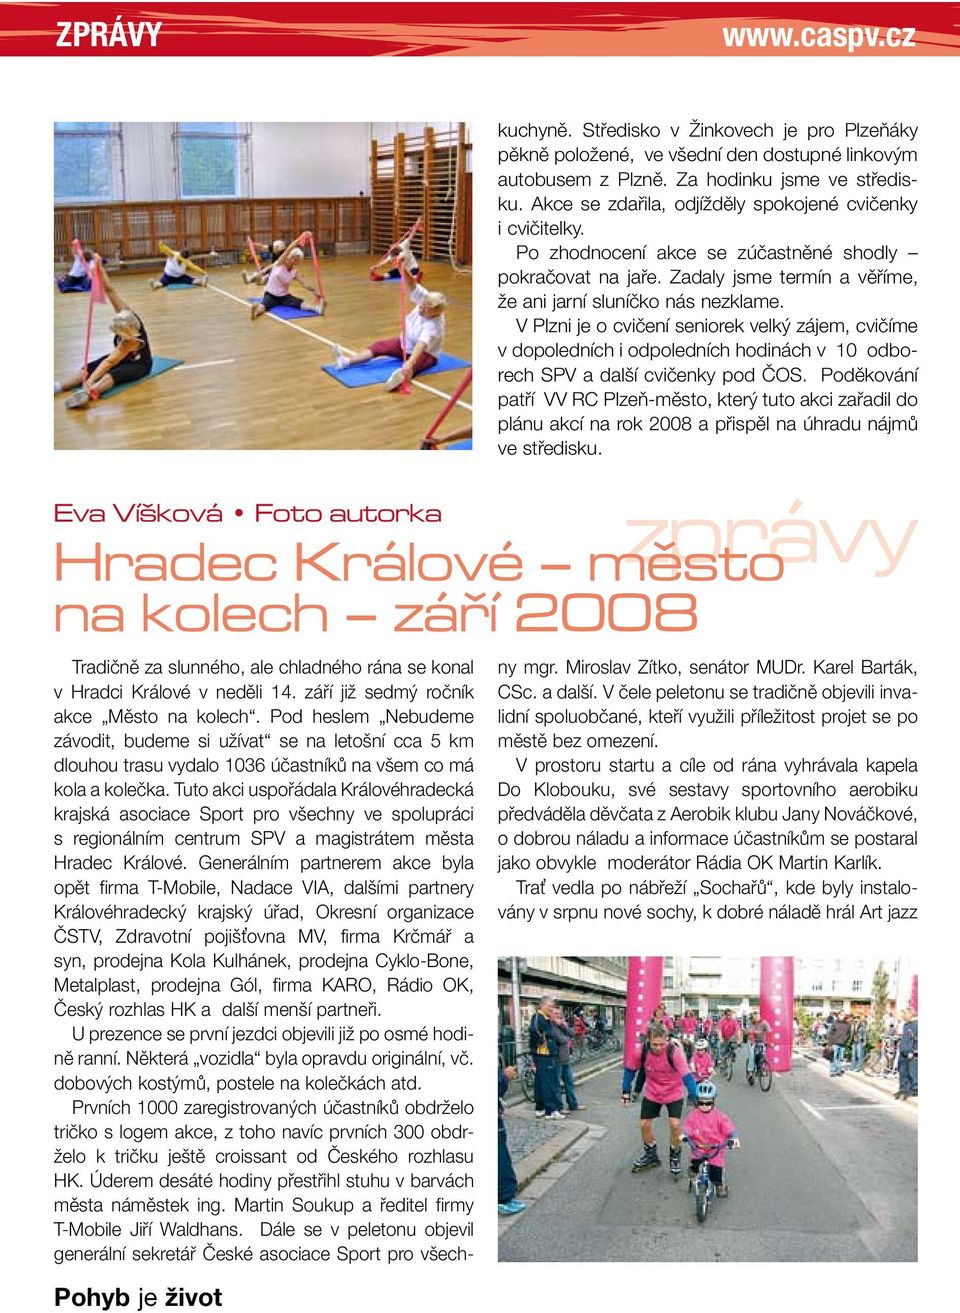 V Plzni je o cvičení seniorek velký zájem, cvičíme v dopoledních i odpoledních hodinách v 10 odborech SPV a další cvičenky pod ČOS.